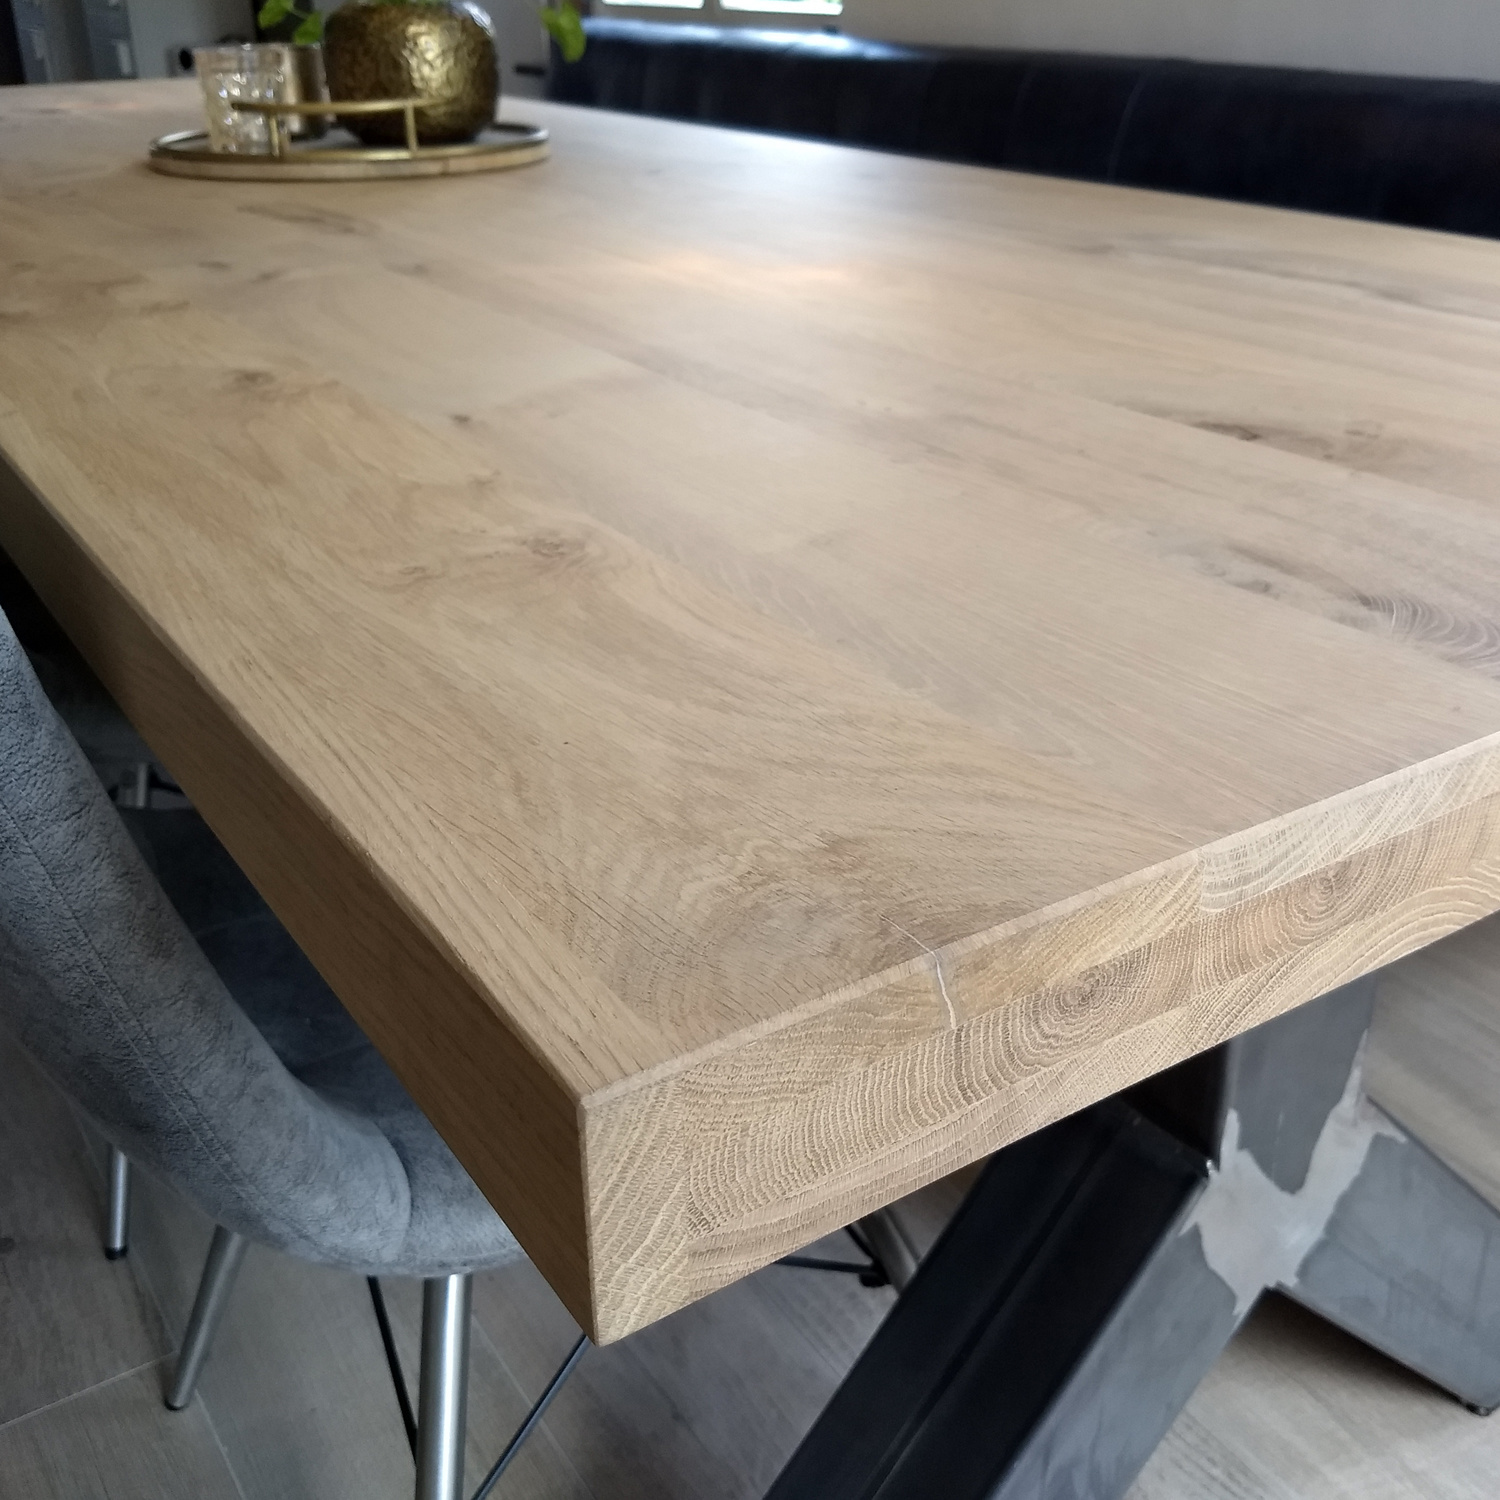  Tischplatte Eiche nach Maß - 6 cm dick (3-lagig) - Eichenholz rustikal - Eiche Tischplatte aufgedoppelt - verleimt & künstlich getrocknet (HF 8-12%) - 50-120x50-300 cm